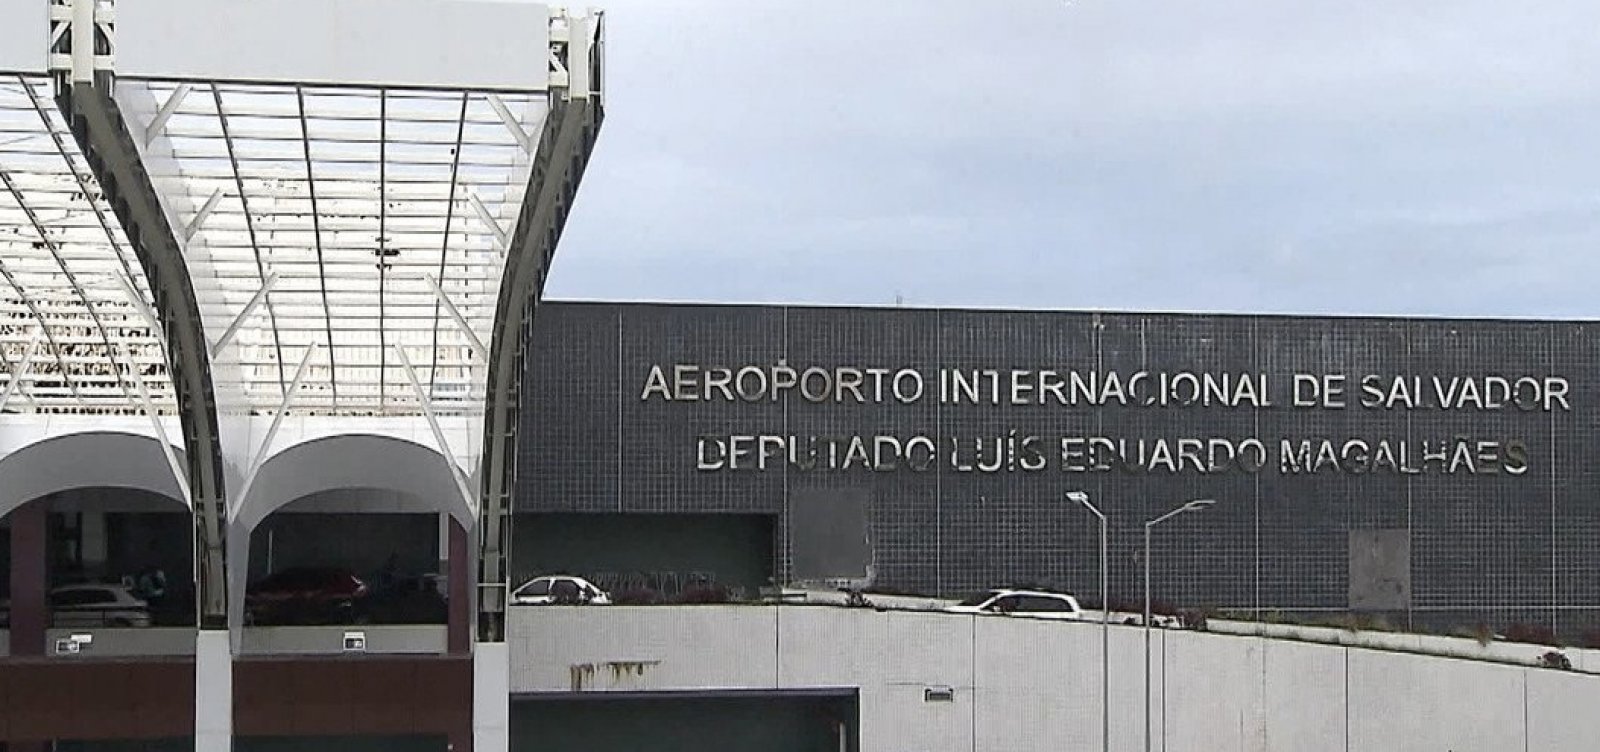 Manutenção no Aeroporto de Salvador deixará terminal sem ar-condicionado